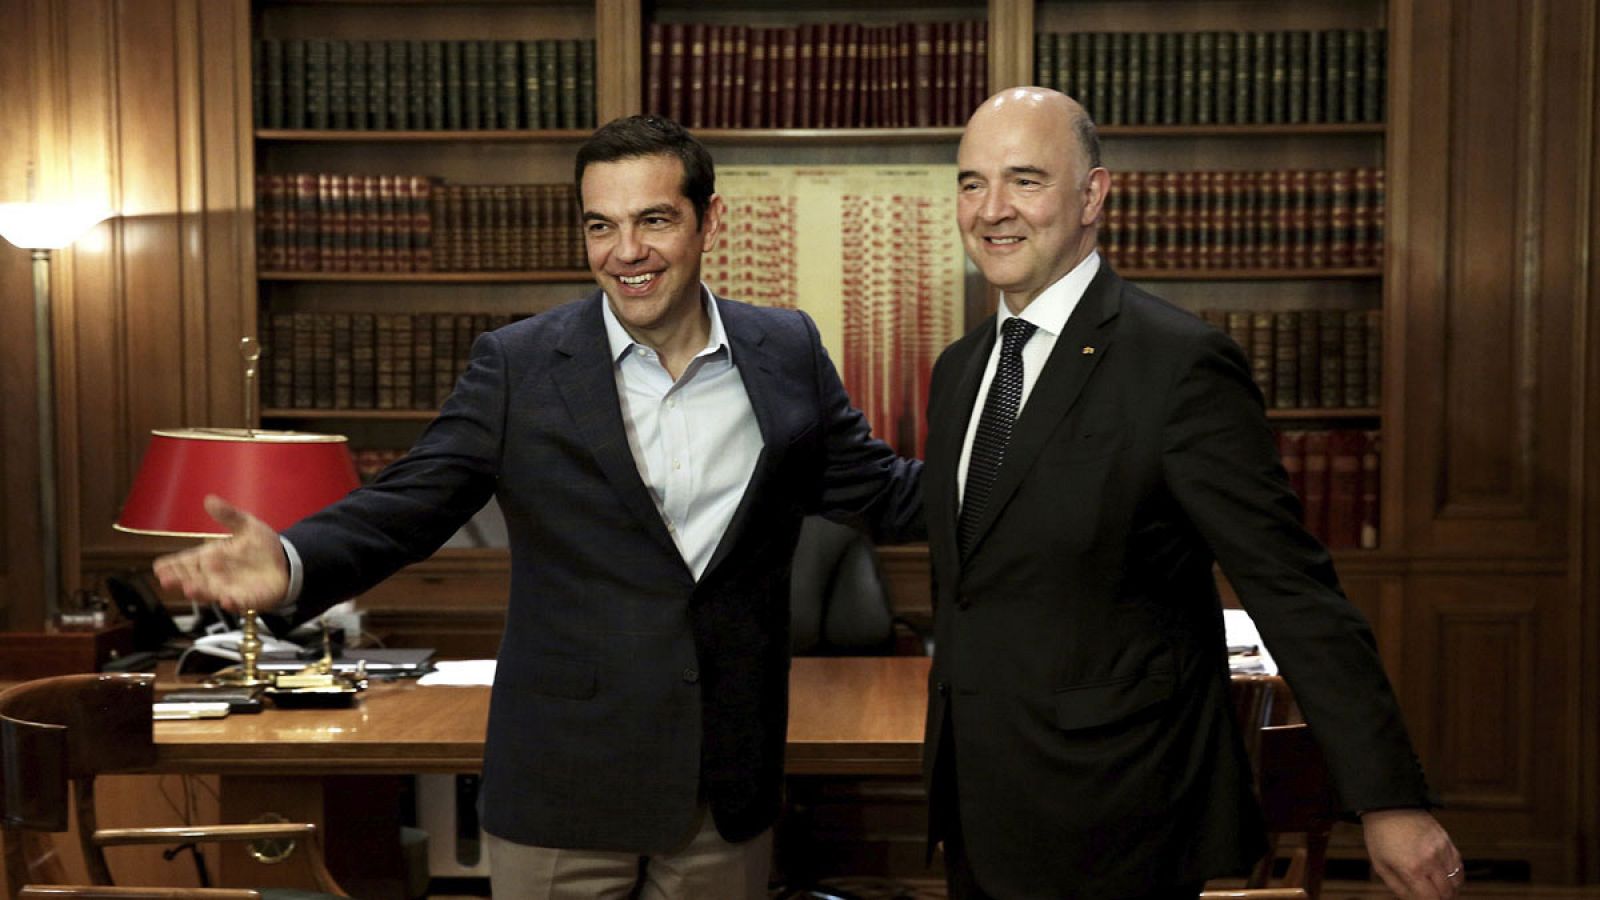 El primer ministro griego, Alexis Tsipras, conversa con el comisario europeo de Asuntos Económicos y Financieros, Pierre Moscovici, durante un encuentro en Atenas